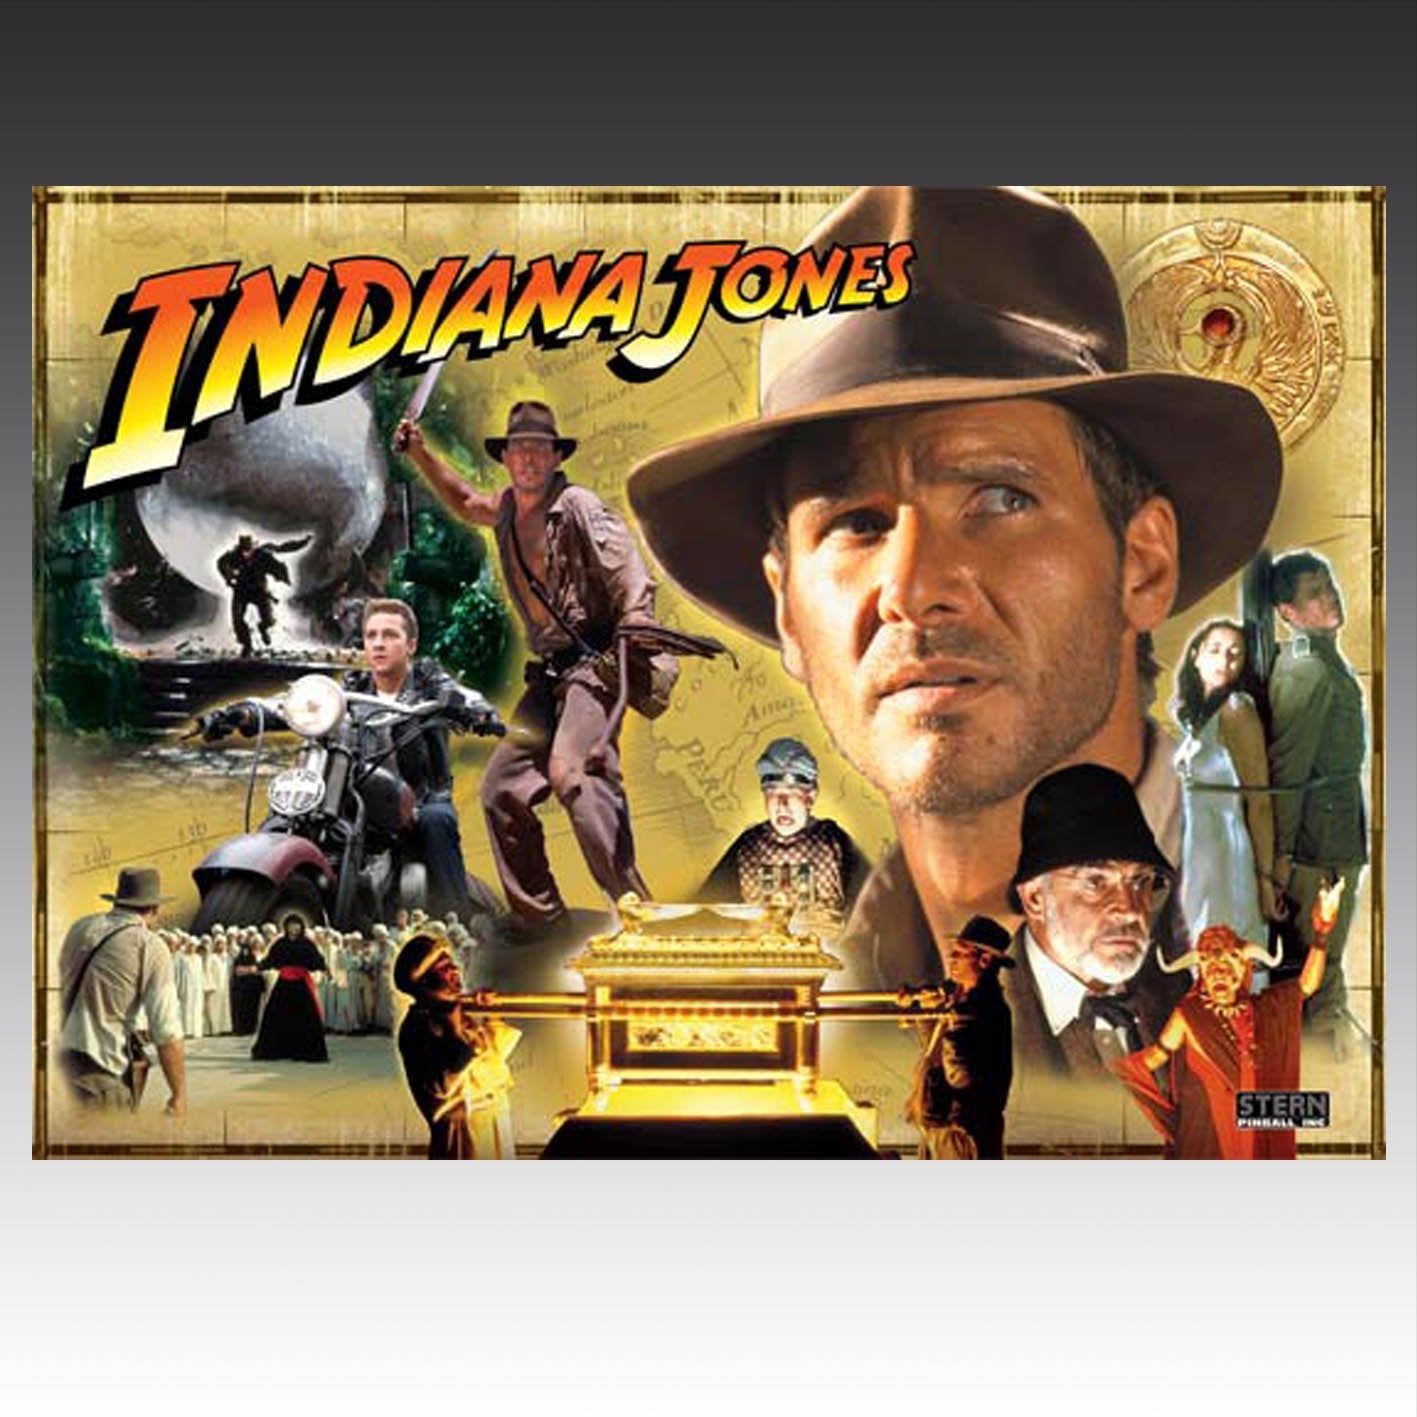 2008 Indiana Jones Pinball Machine by Stern